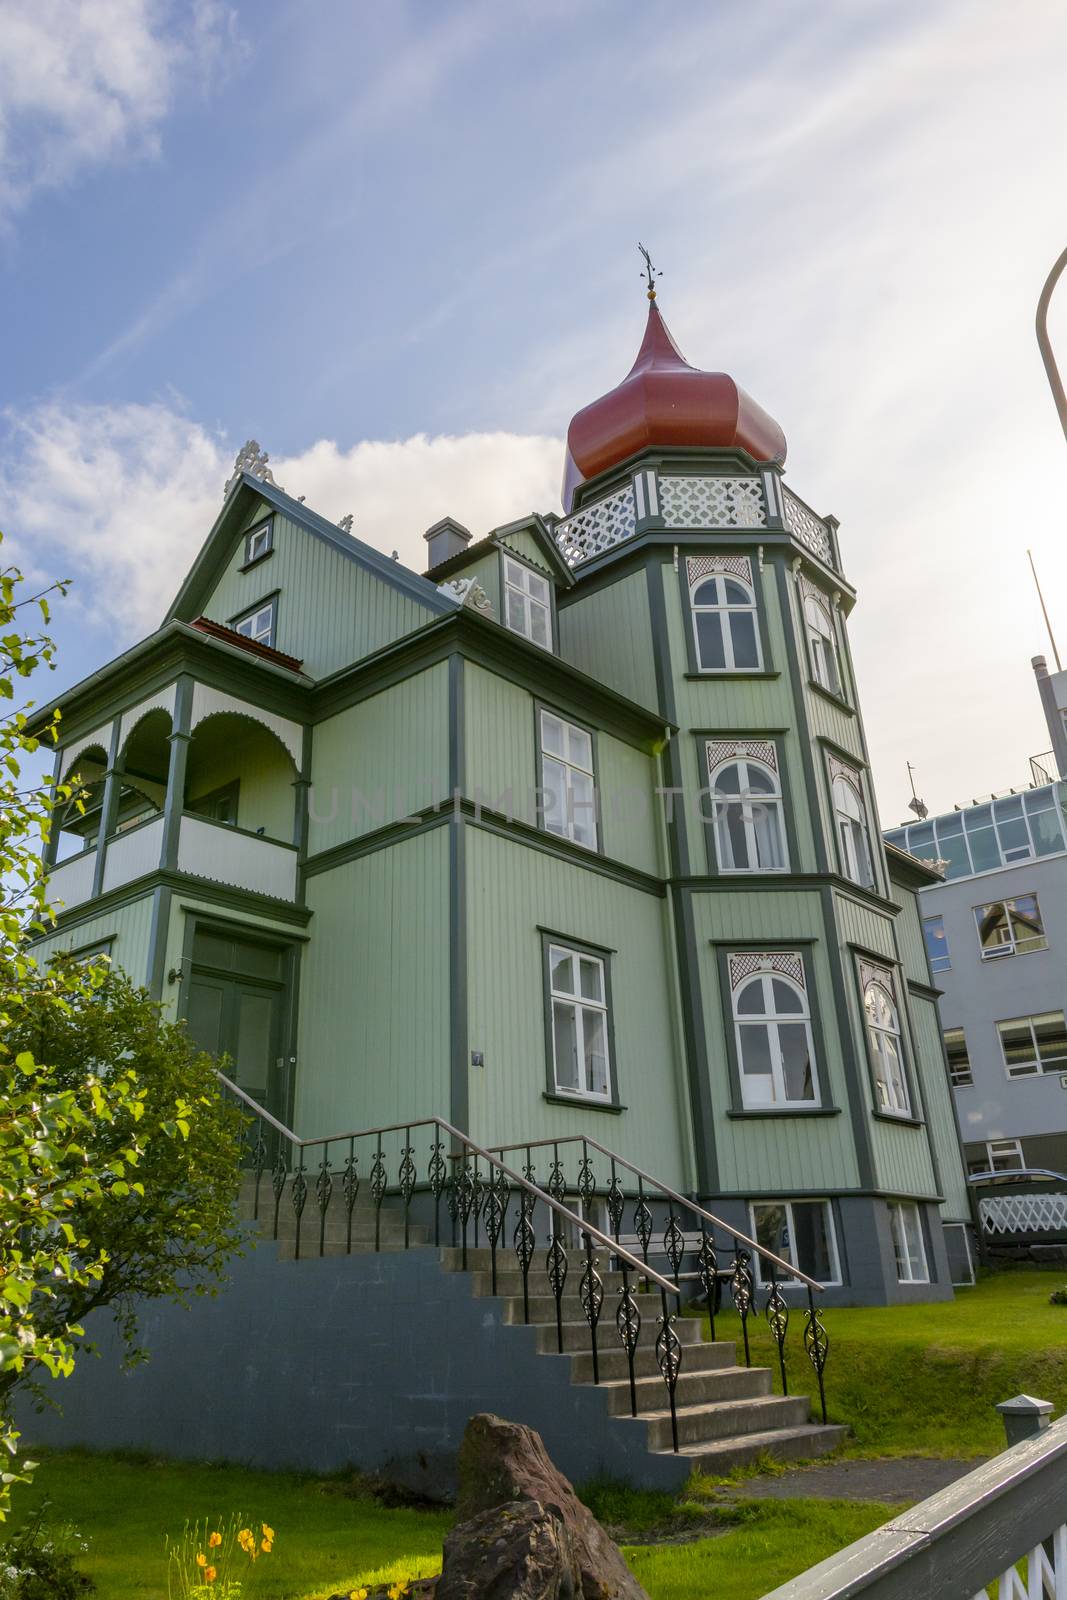 Reykjavik, Iceland July 2019: historical wooden house downtown Reykjavik, Iceland